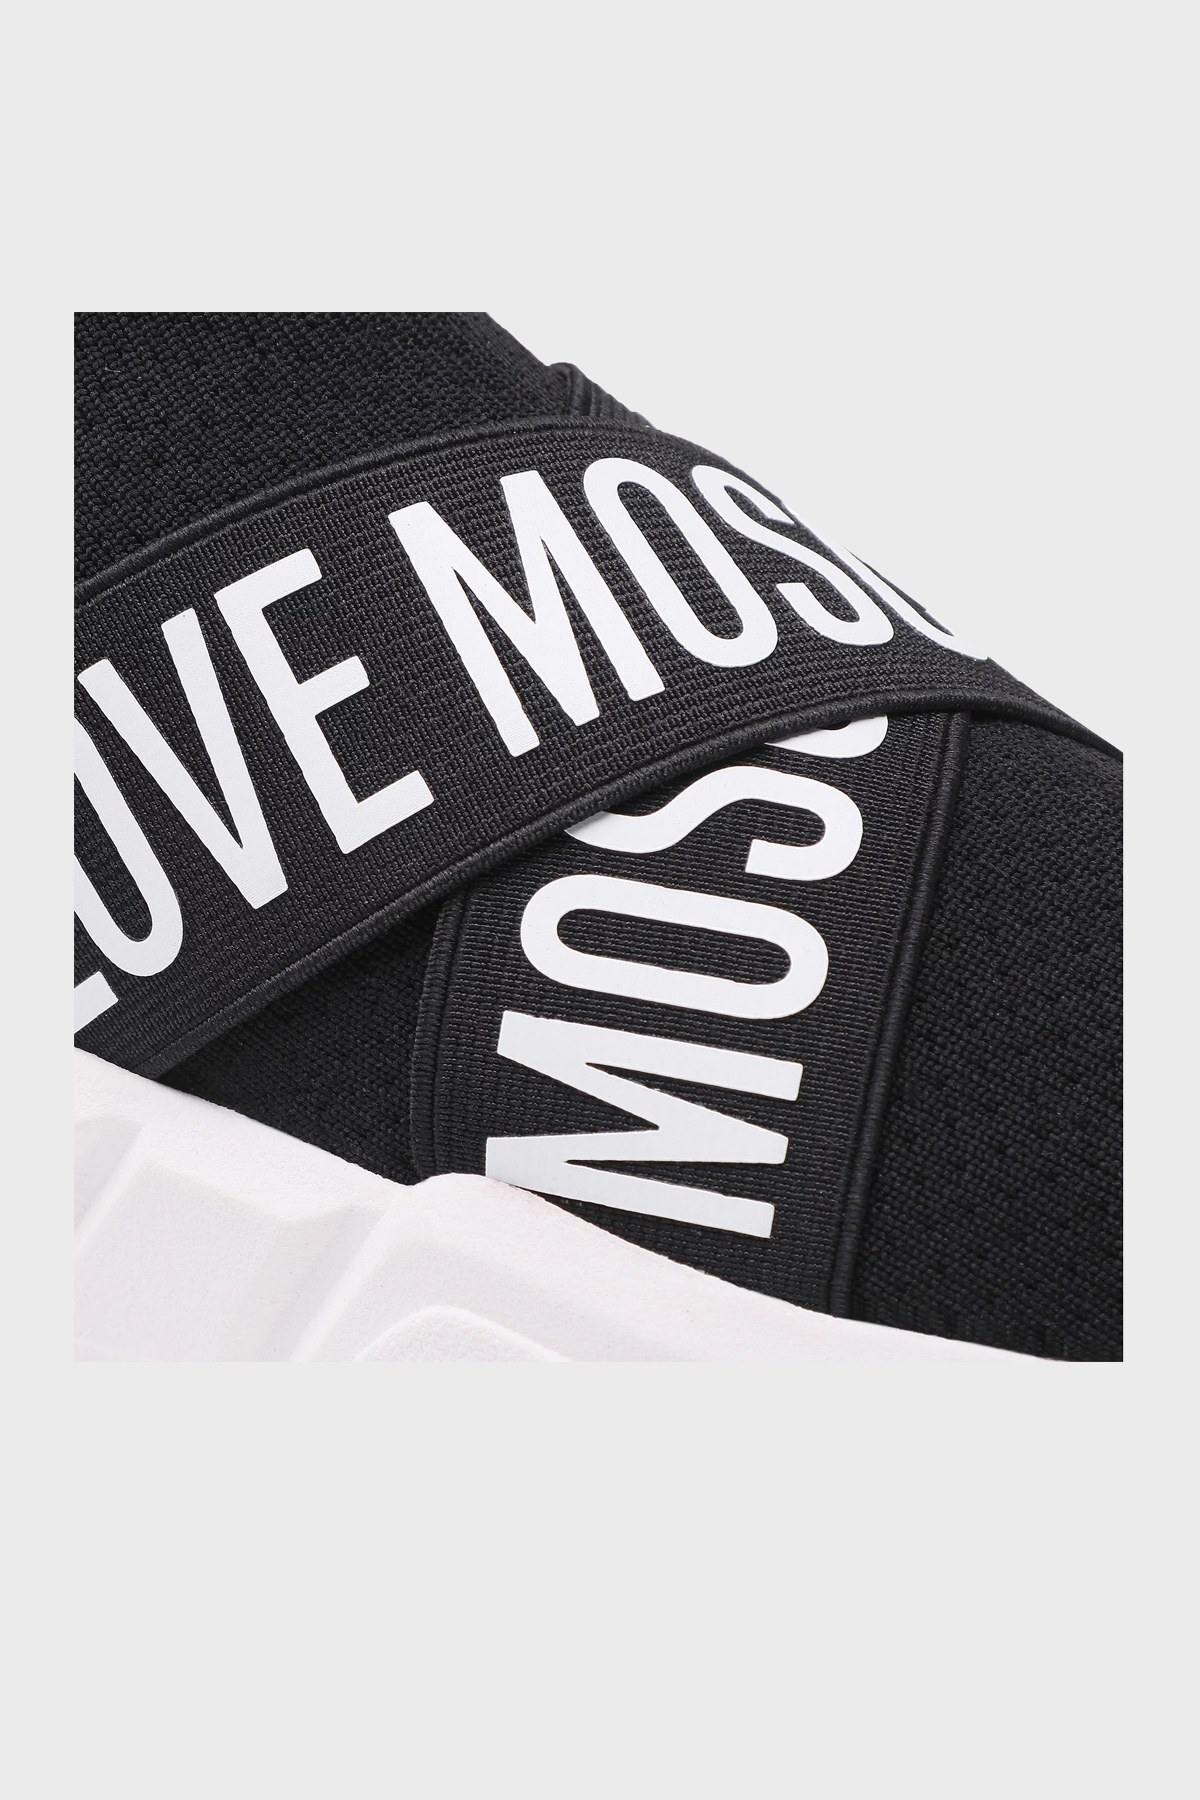 Love Moschino Marka Logolu Bayan Ayakkabı JA15033G1DIZ0000 SİYAH